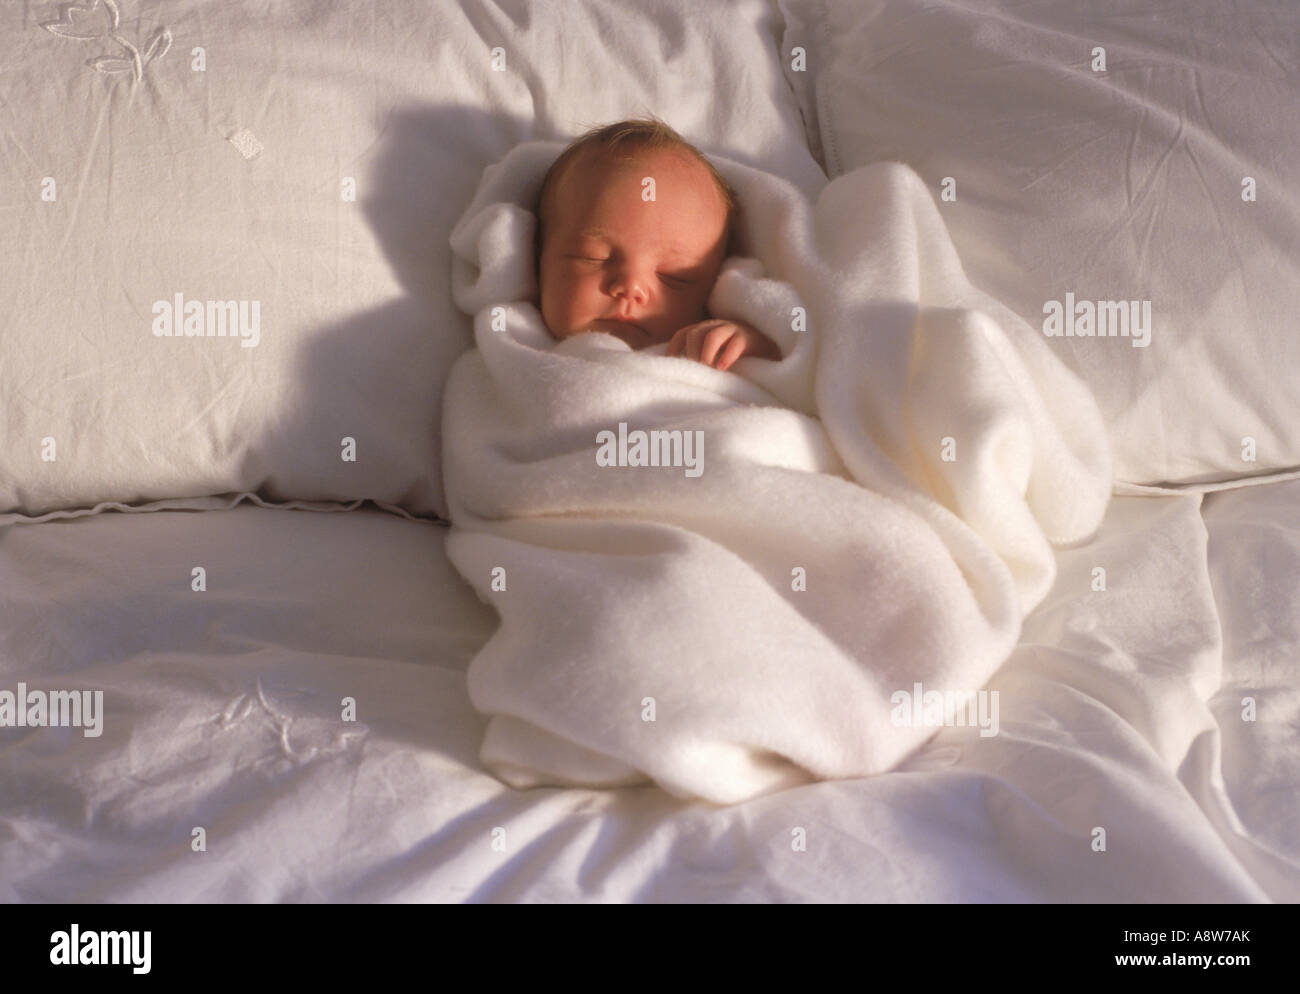 Bebe De 2 A 3 Semaines Sur Un Lit Enveloppe Dans Une Couverture Blanche Dans La Lumiere Du Matin Photo Stock Alamy